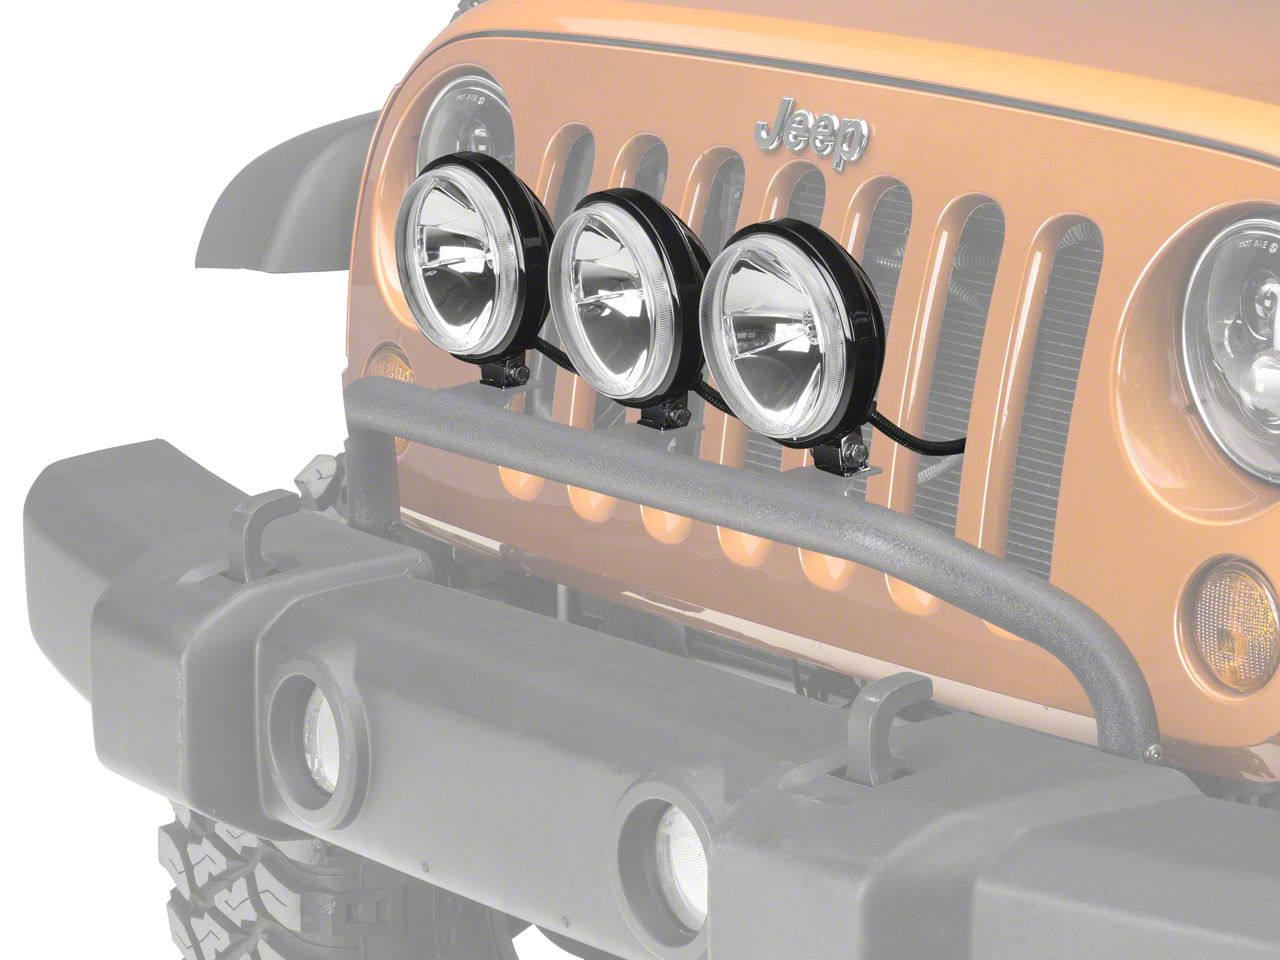 Front Bumper Mount 100W Slim Fog Light Kit for Jeep Wrangler JK 07-18 12496.13